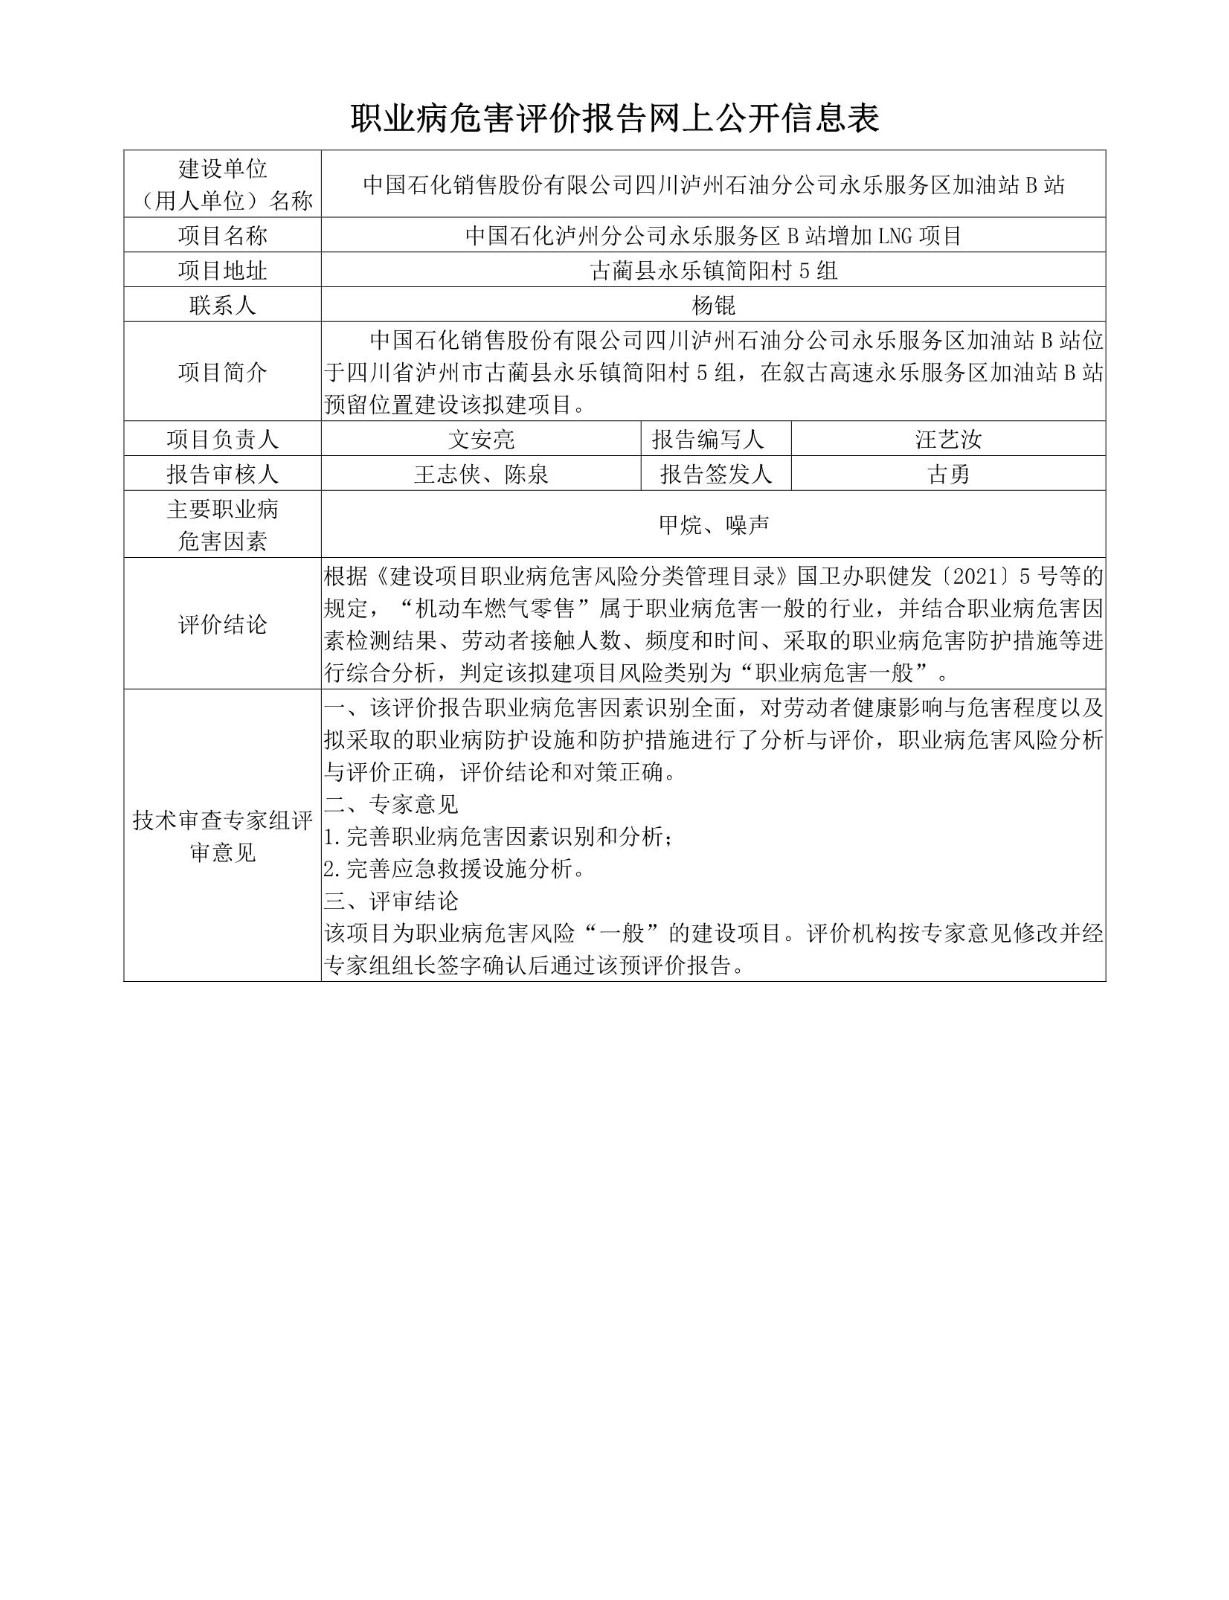 中国石化泸州分公司永乐服务区B站增加LNG项目职业病危害预评价